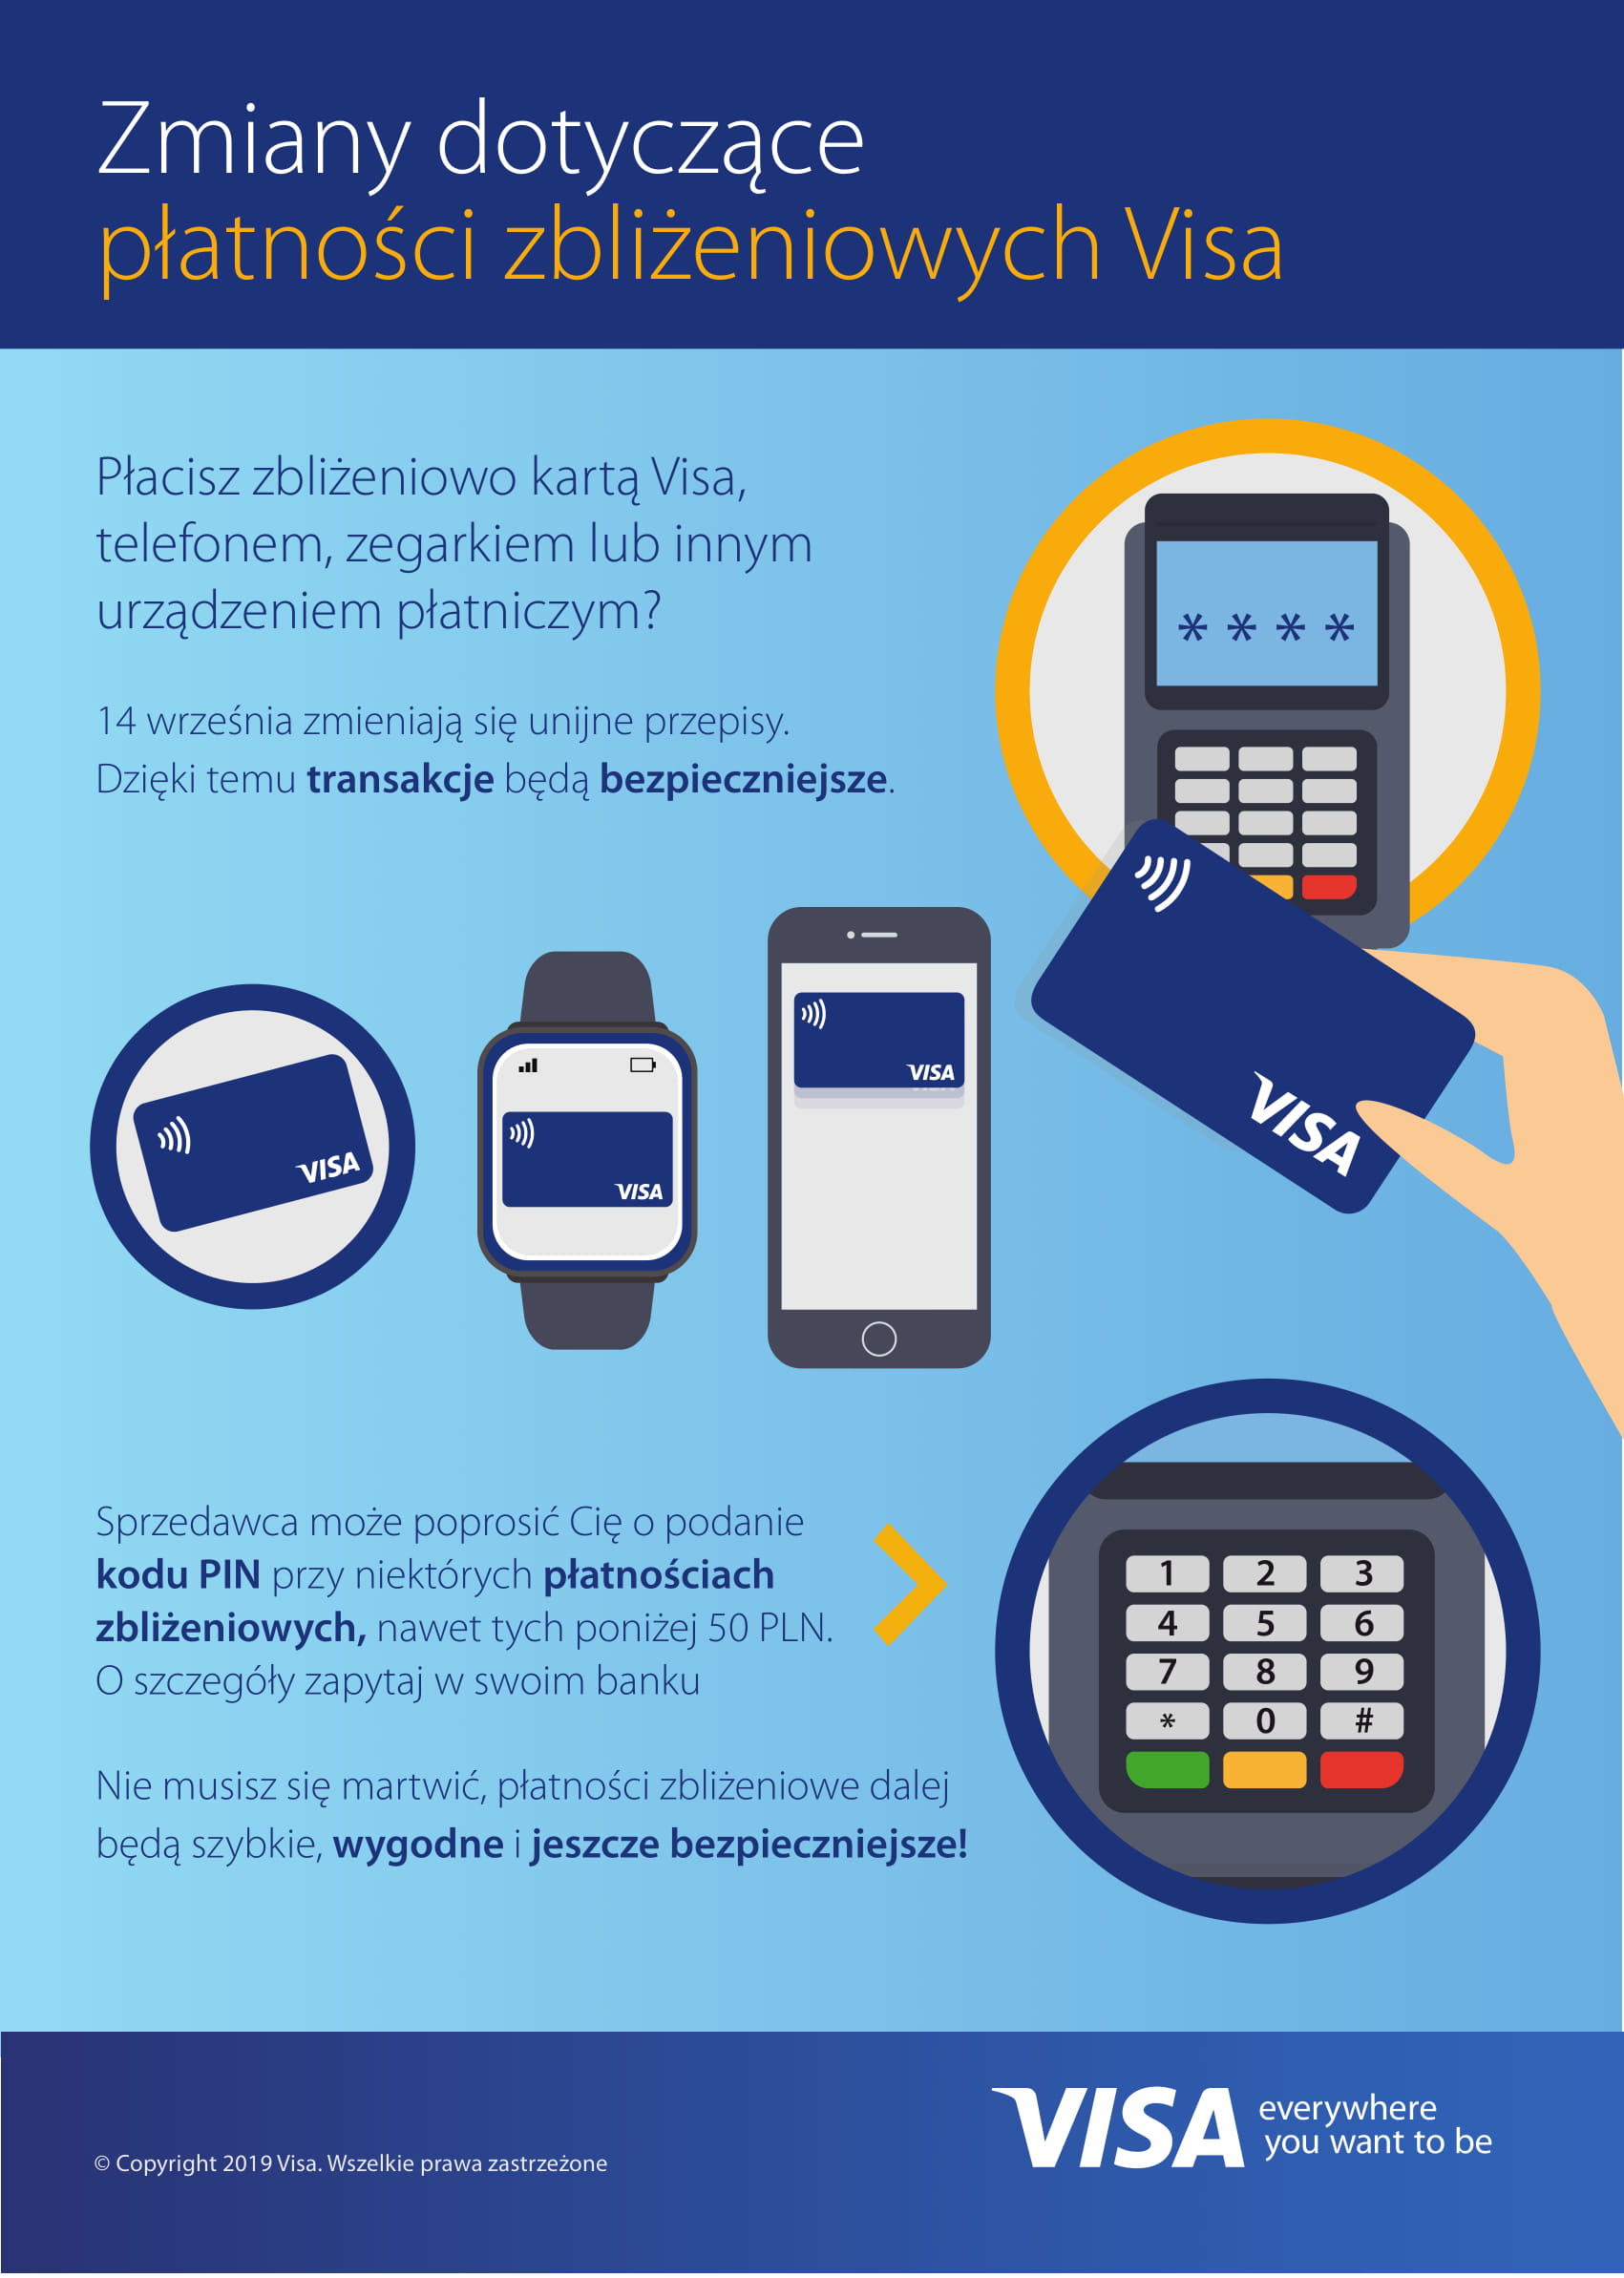 14 września zmienią się unijne przepisy dot. płatności - infografika Visa na temat płatności zbliżeniowych